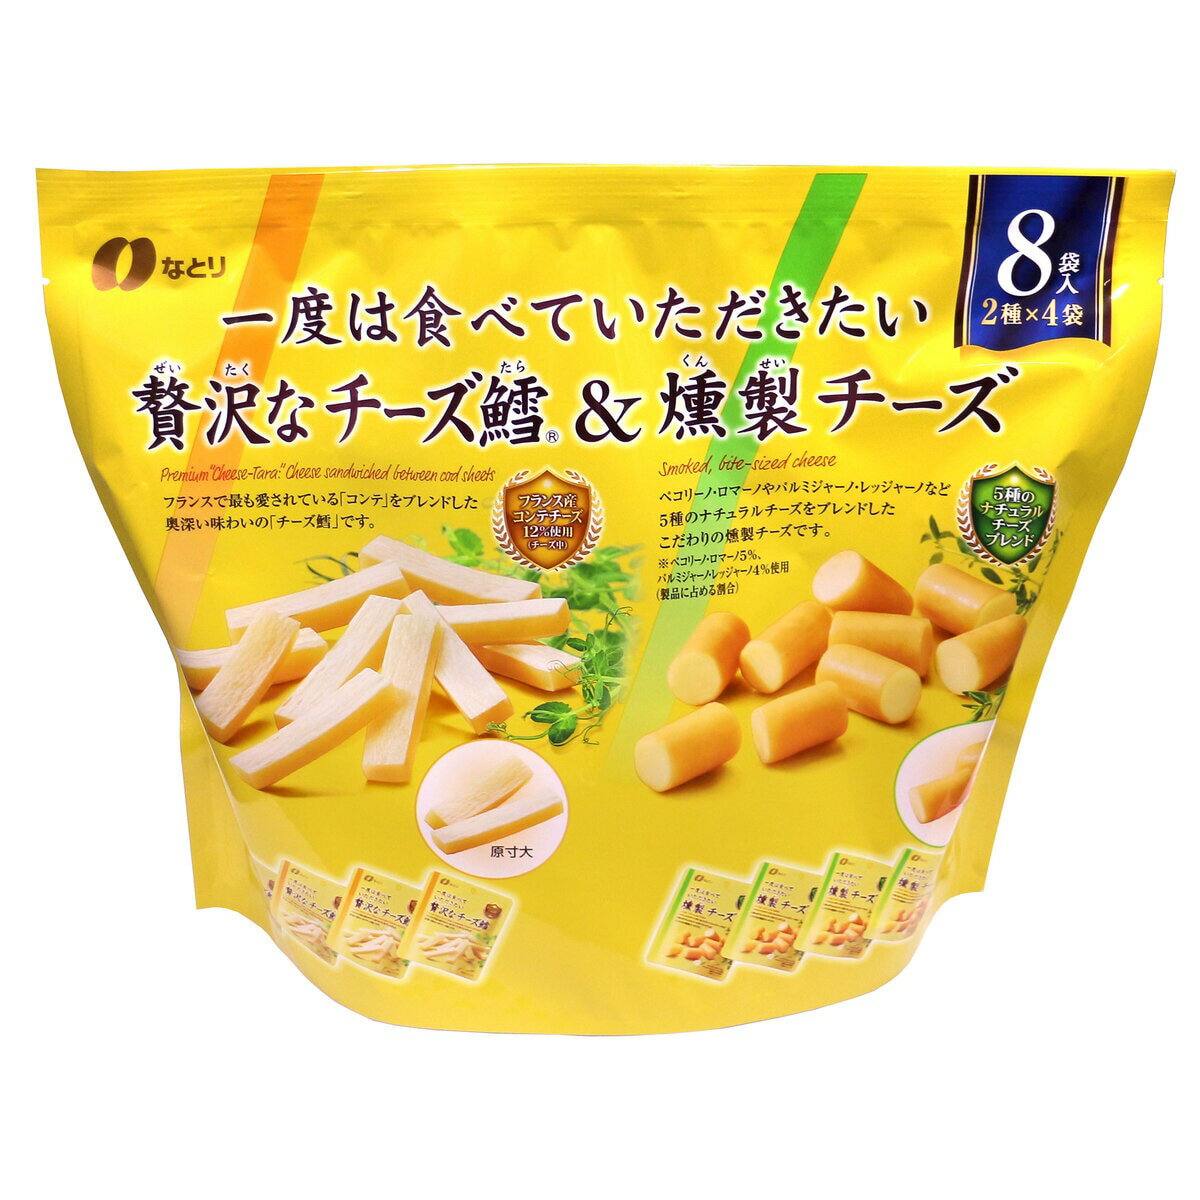 商品の特徴 内容量　256g 食べきりサイズの小袋が8袋 チーズ鱈と燻製チーズのアソート